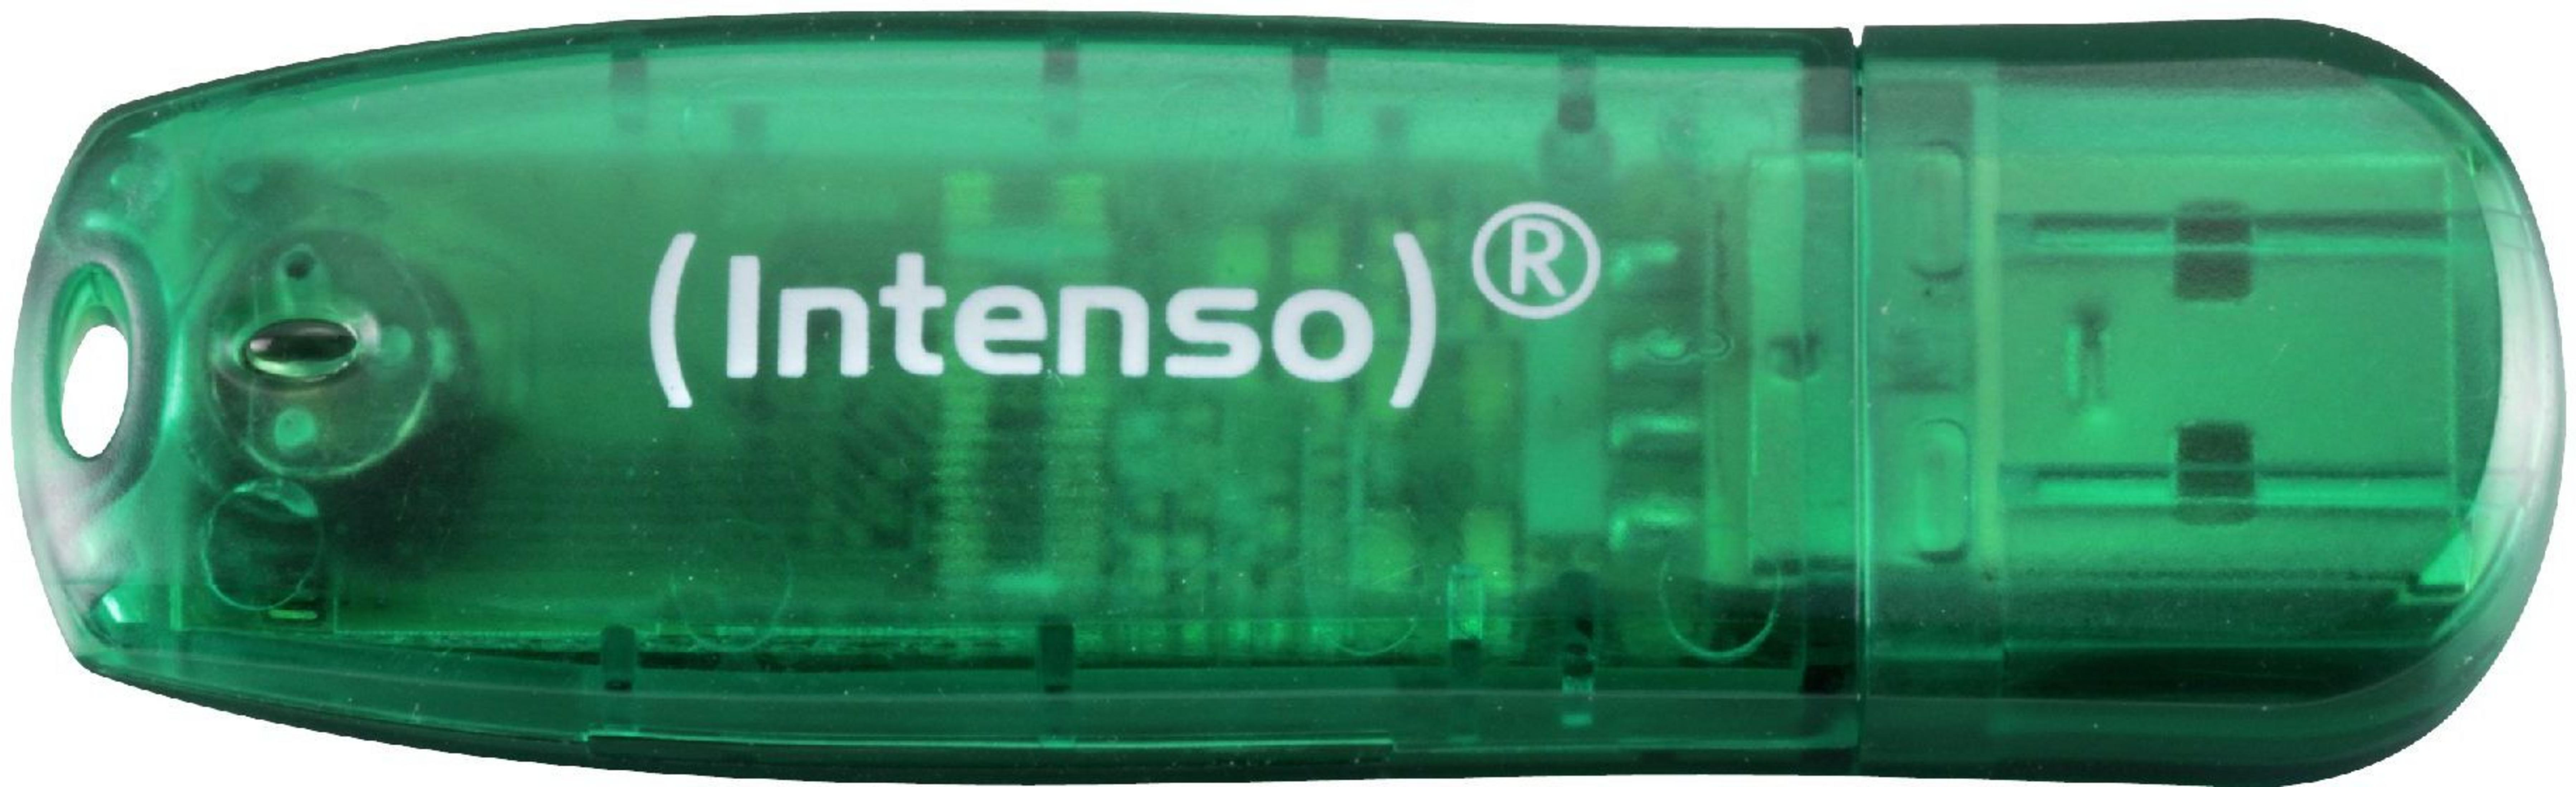 8 INTENSO (Grün, USB-Stick RAINBOW 8GB 3502460 GRÜN GB)